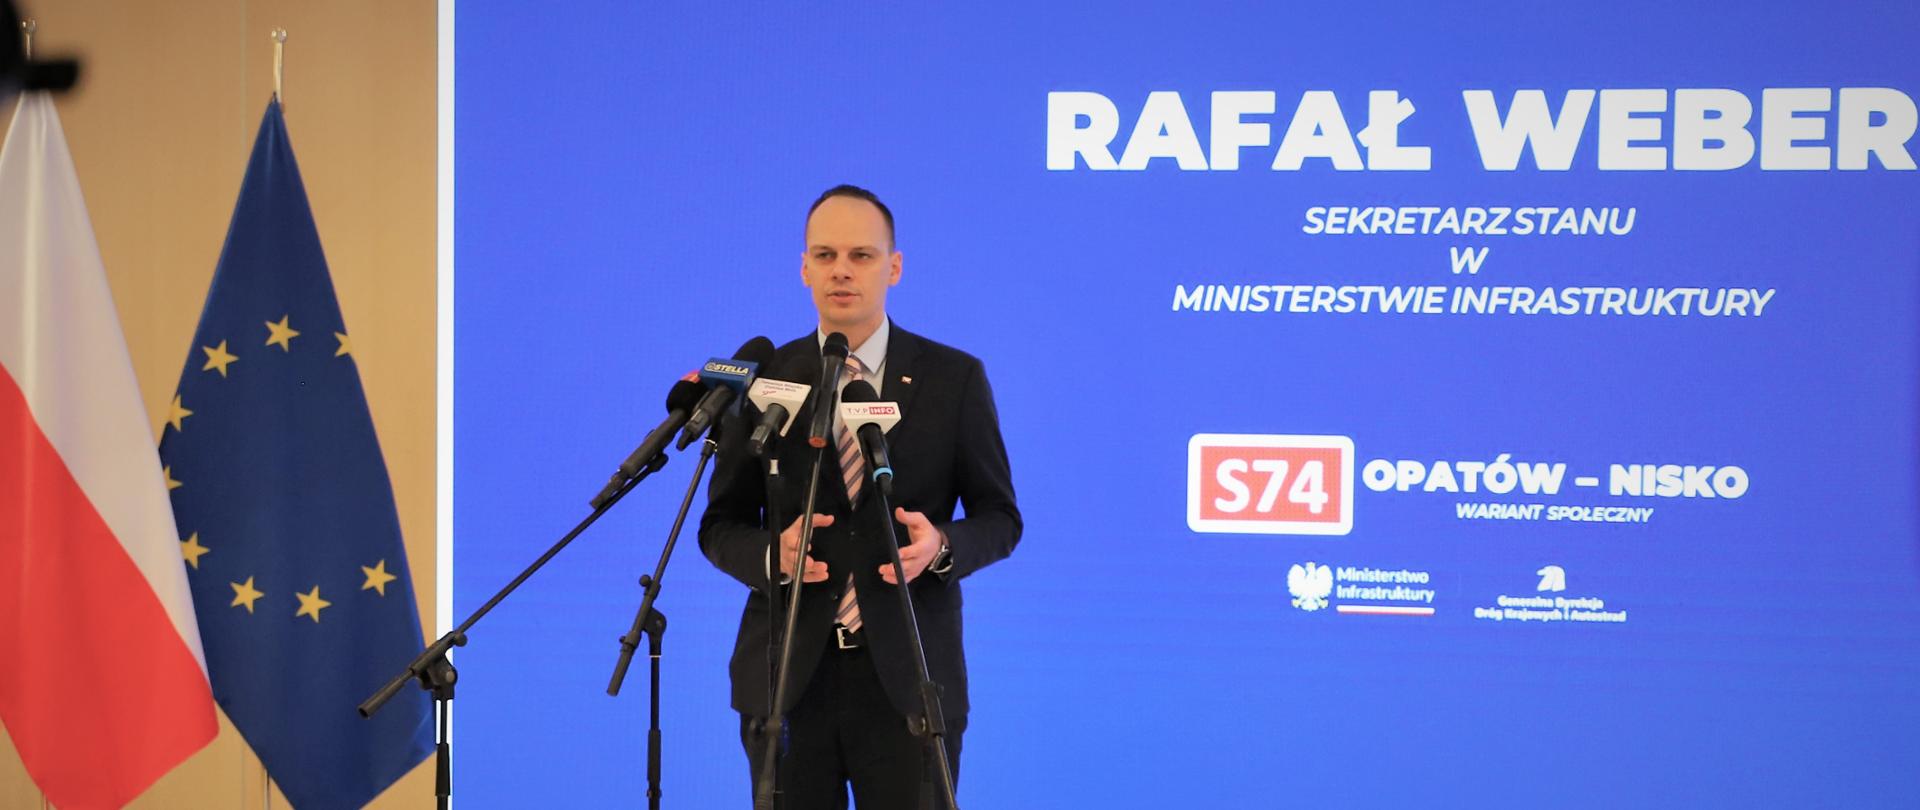 Wiceminister infrastruktury Rafał Weber podczas konferencji prasowej poświęconej budowie drogi ekspresowej S74 na odcinku Opatów – Nisko